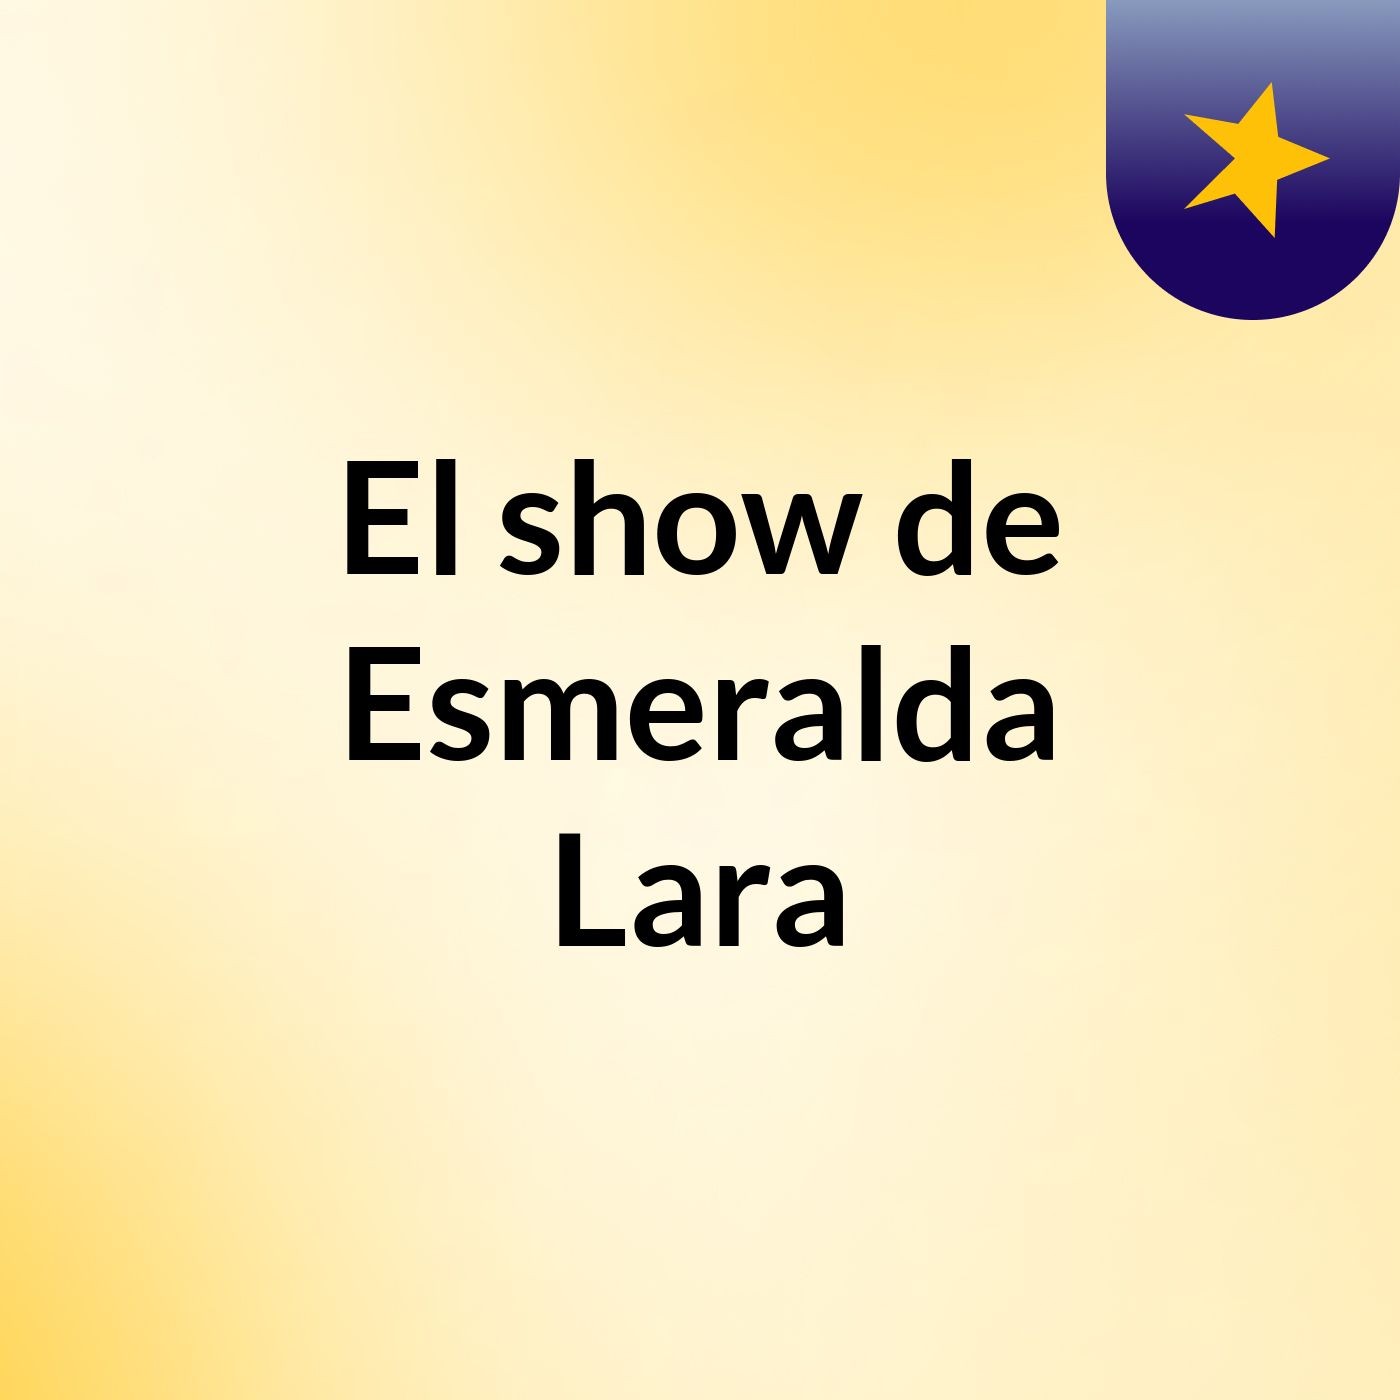 El show de Esmeralda Lara